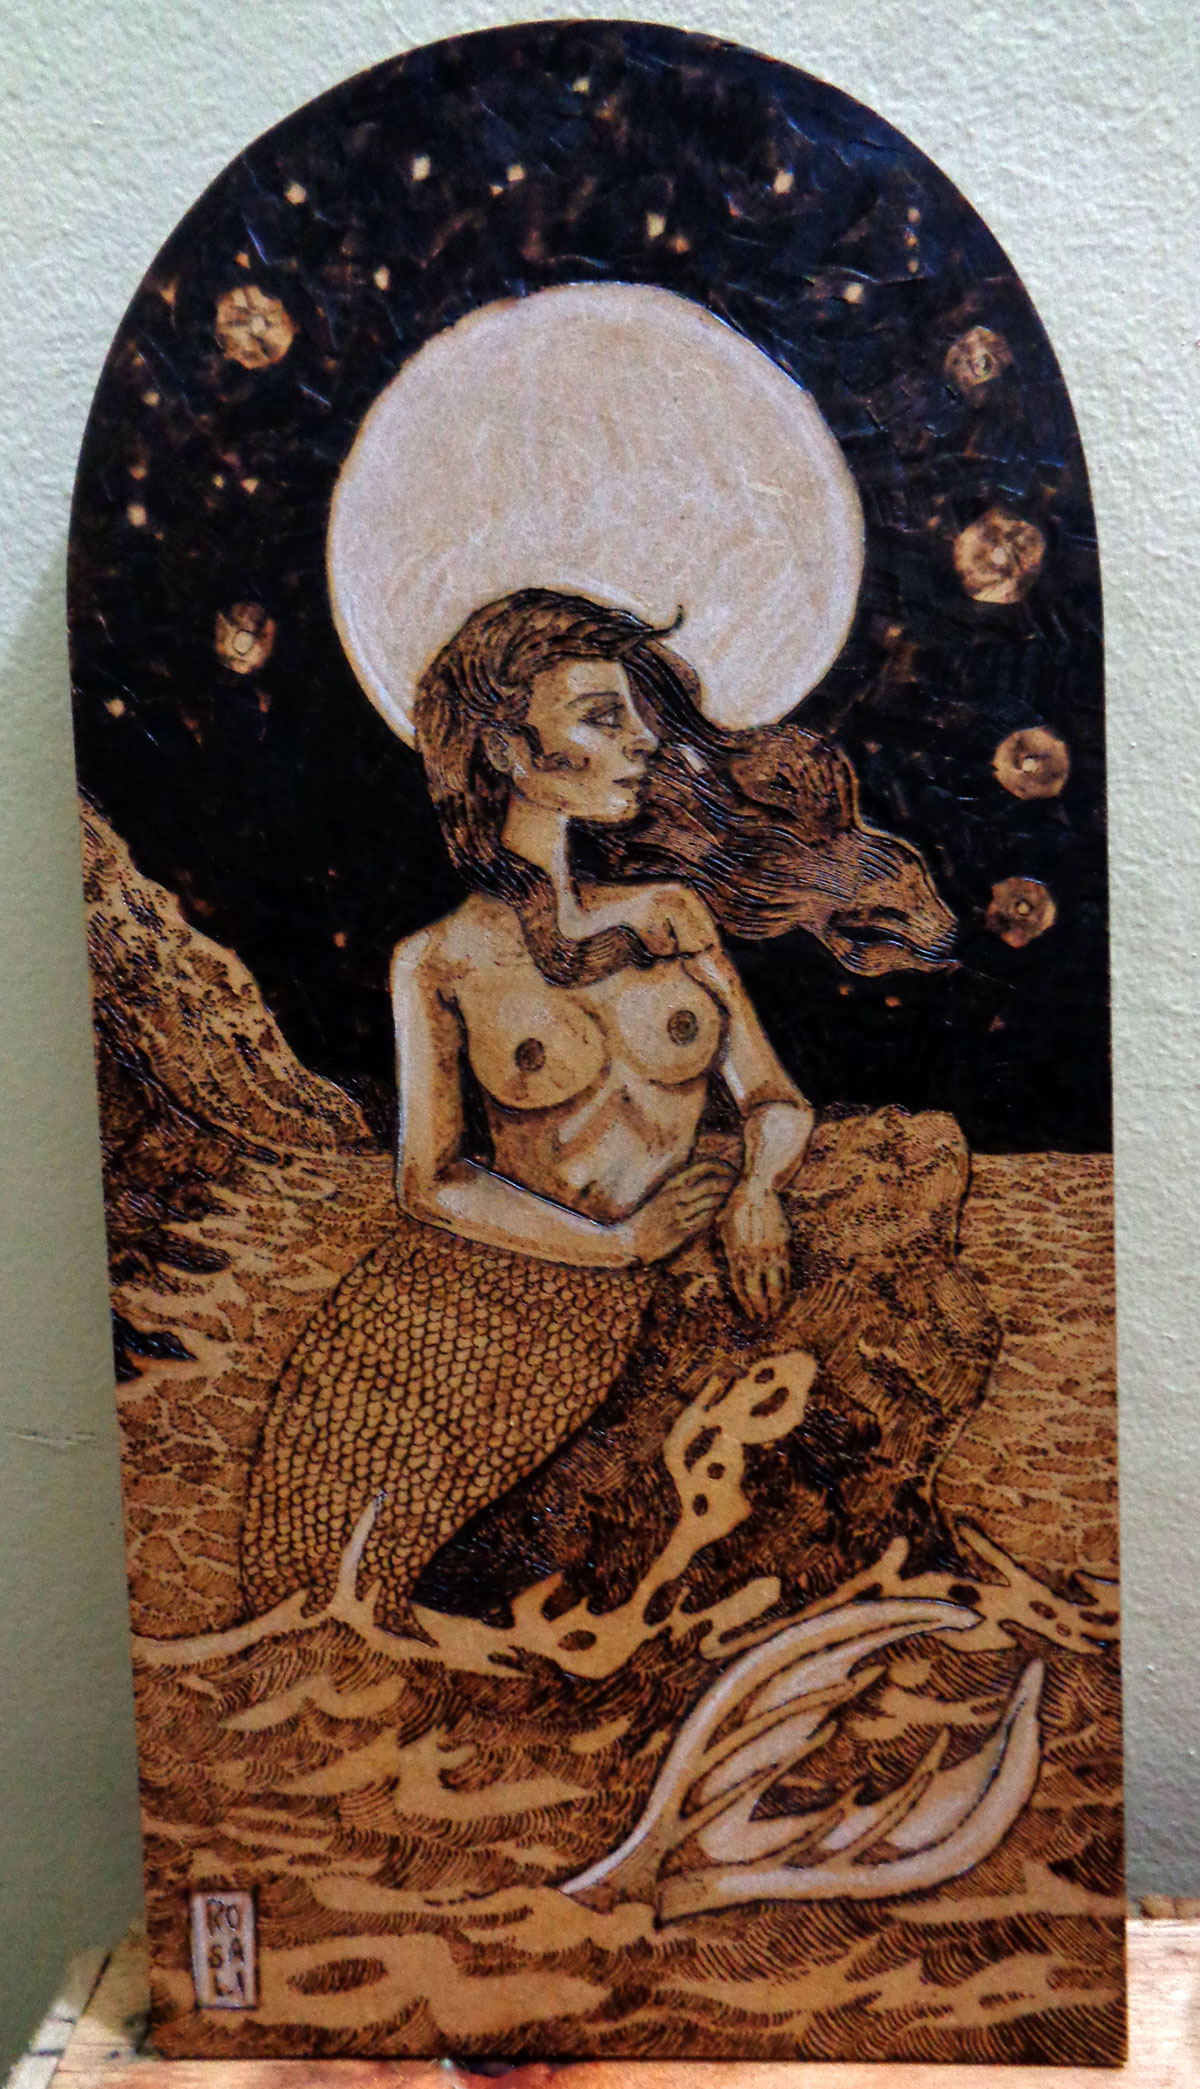 mermaid sereia pirograbado pirografia pyrography Madeira sepia mitologia criação